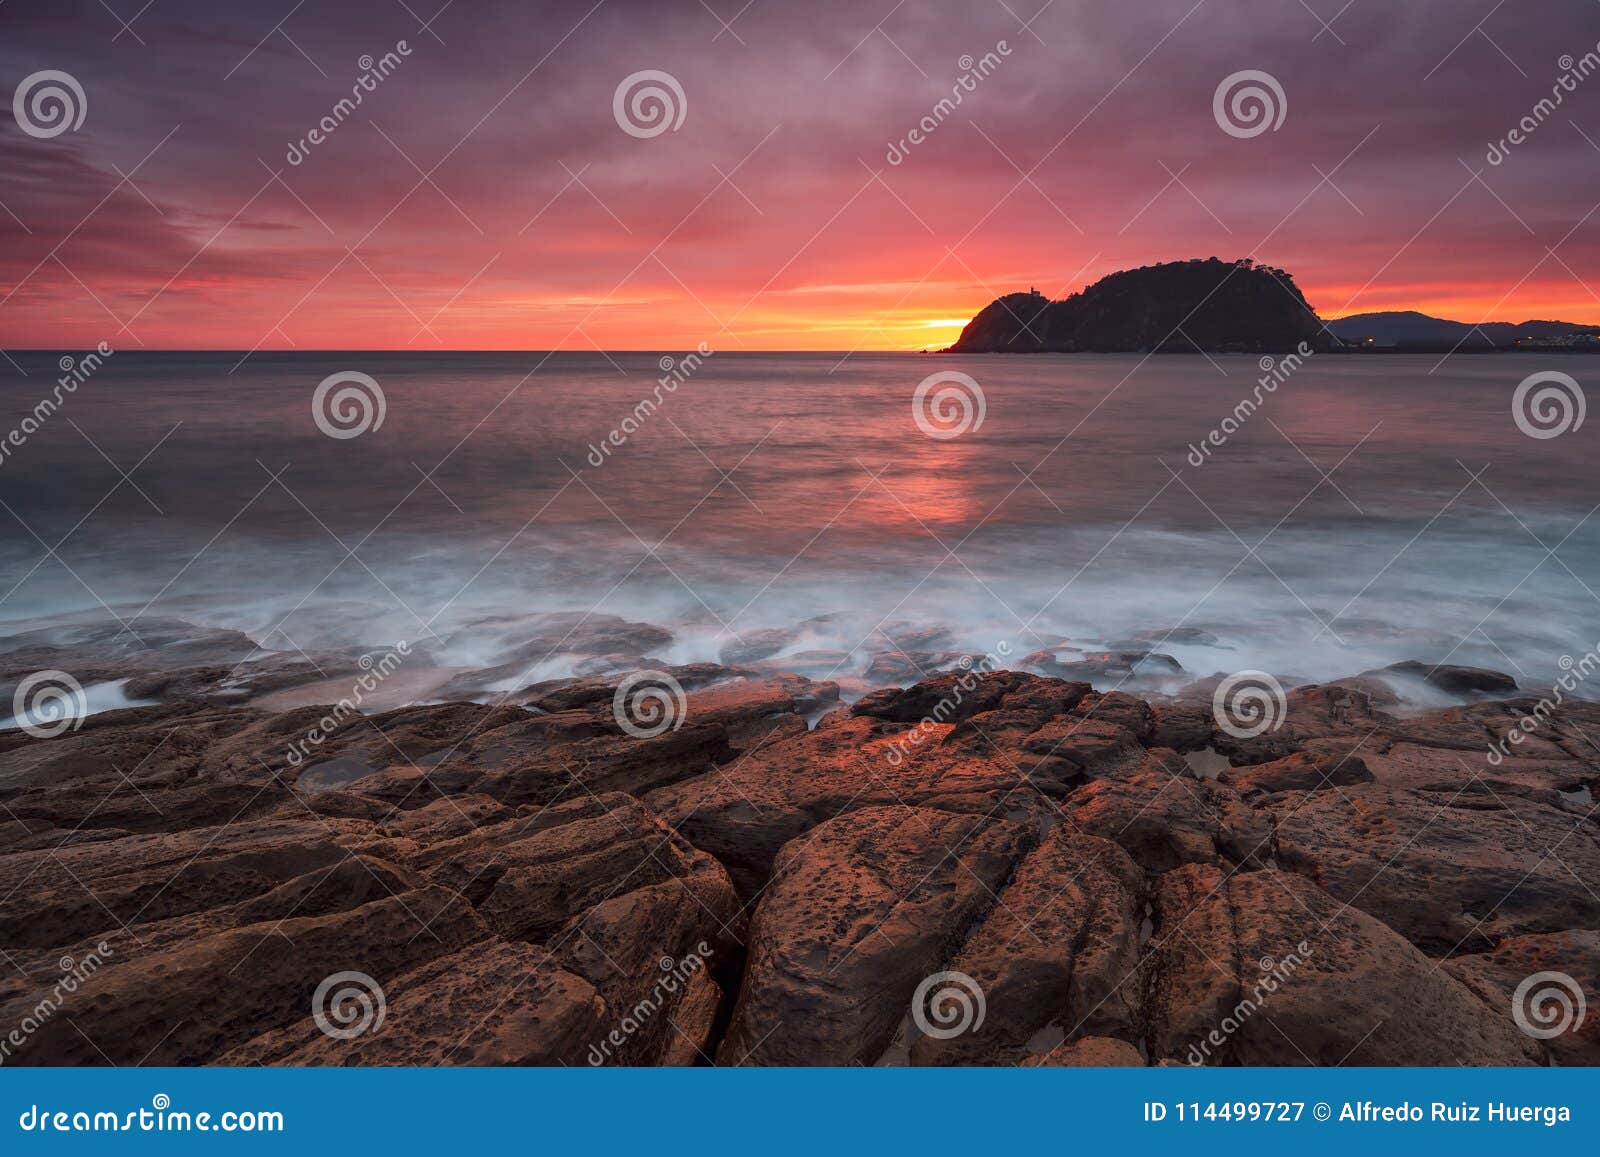 colorful sunrise in cantabric sea, getaria